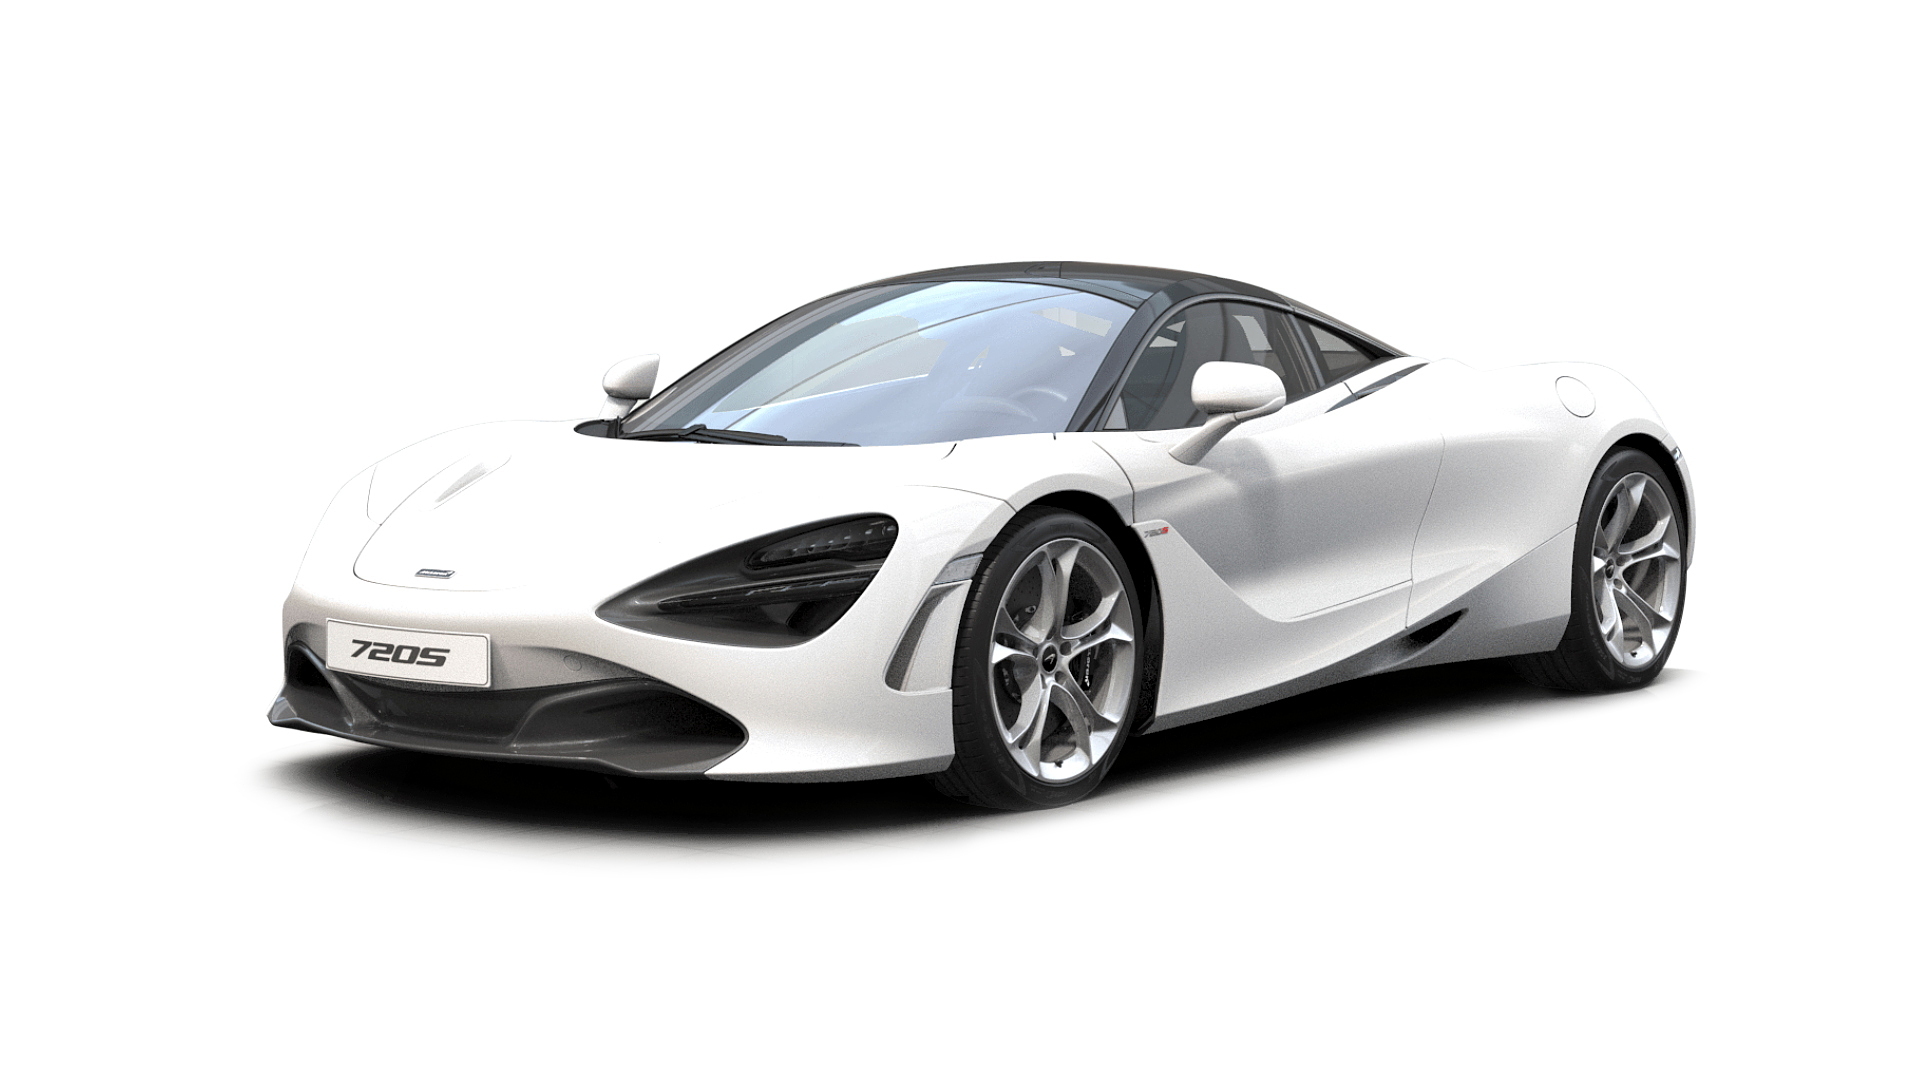 Màu trắng đầy sức sống cùng điểm nhấn đen bí ẩn khiến McLaren 720S Silica White trở nên đặc biệt hơn bao giờ hết. Nếu bạn là một người yêu thích thiết kế thuần chủng cùng sự thanh lịch, hãy lưu lại hình ảnh này ngay lập tức.